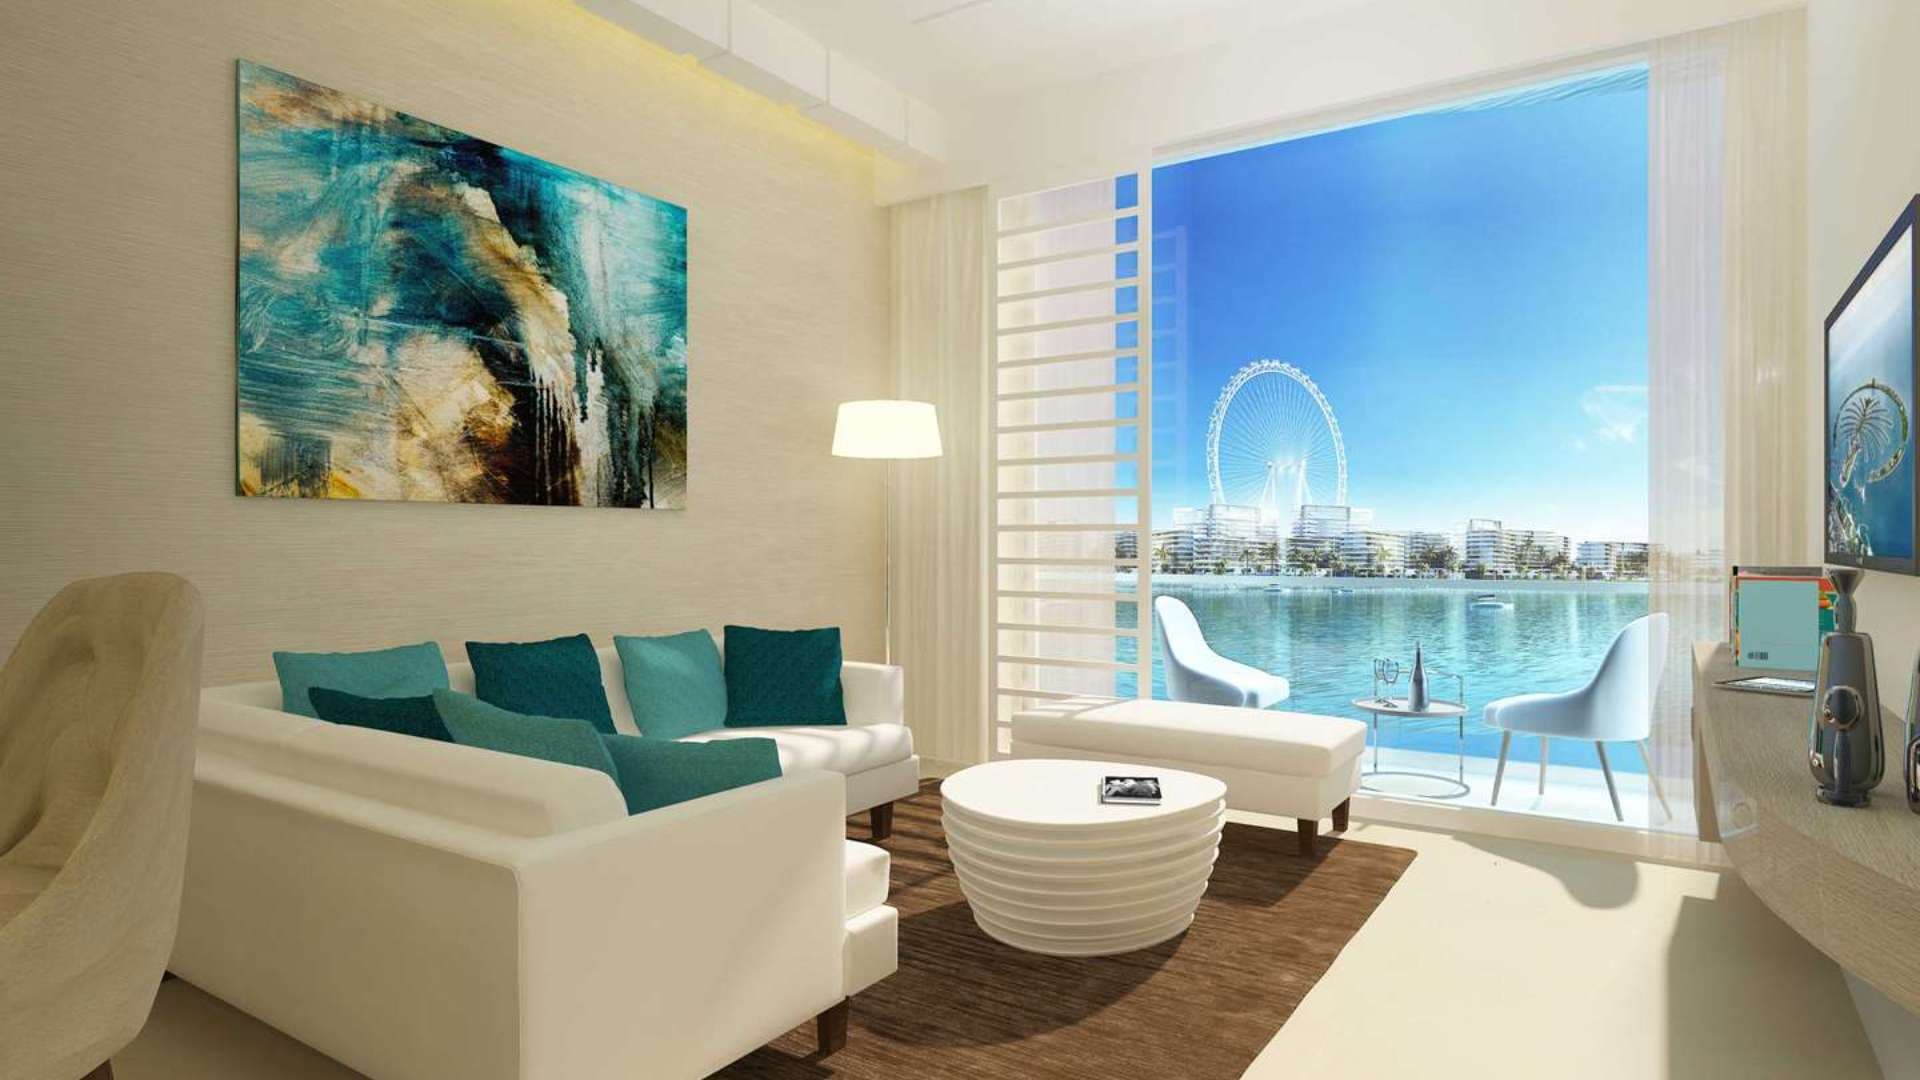 Studio Bedroom Apartment For Sale Seven Palm Lp08385 1168ce8553390d00.jpg